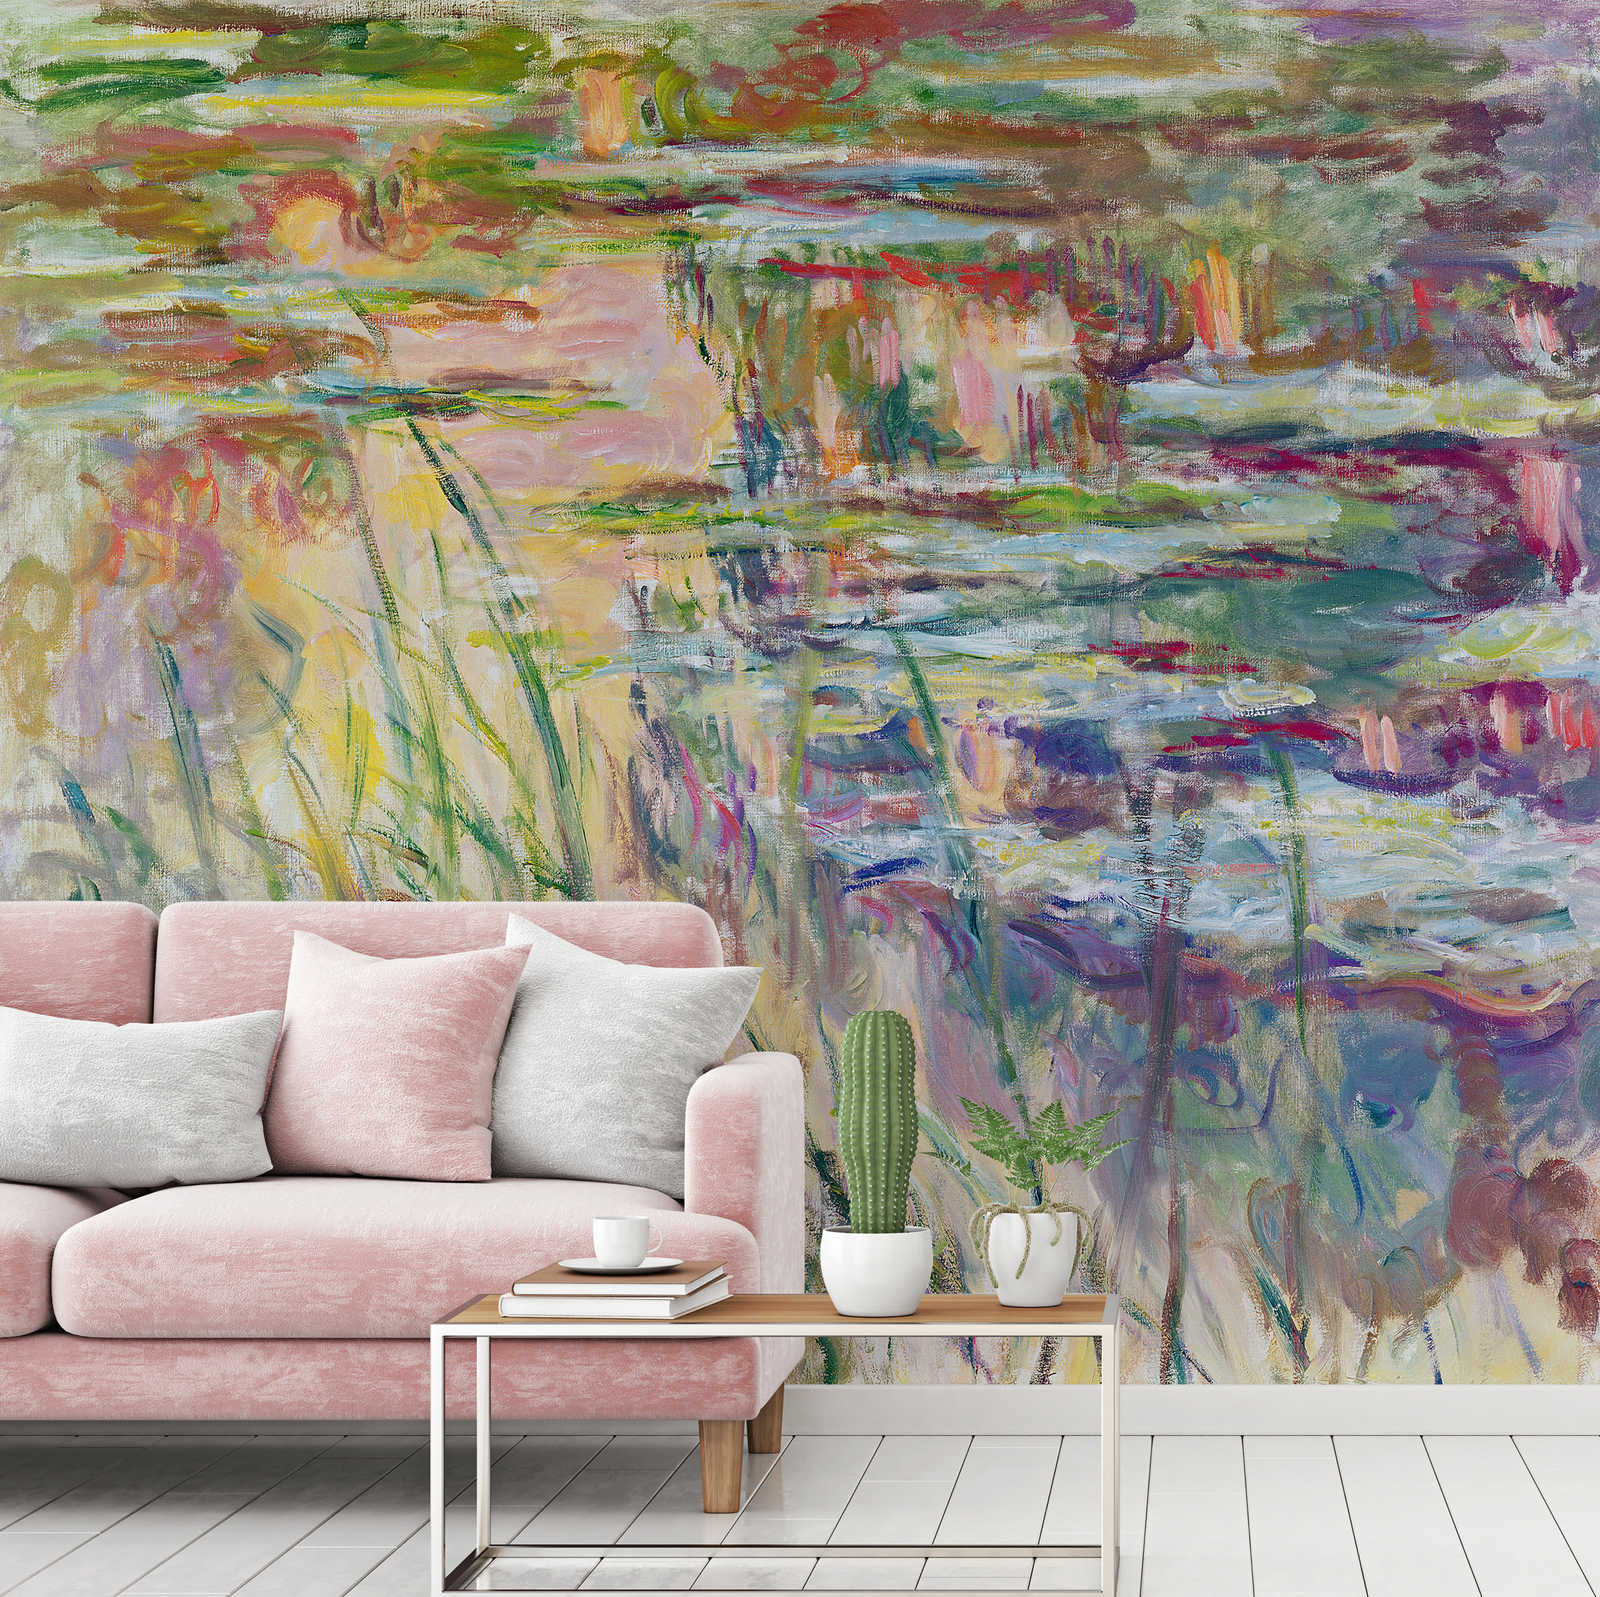             Fototapete "Spiegelungen auf dem Wasser" von Claude Monet
        